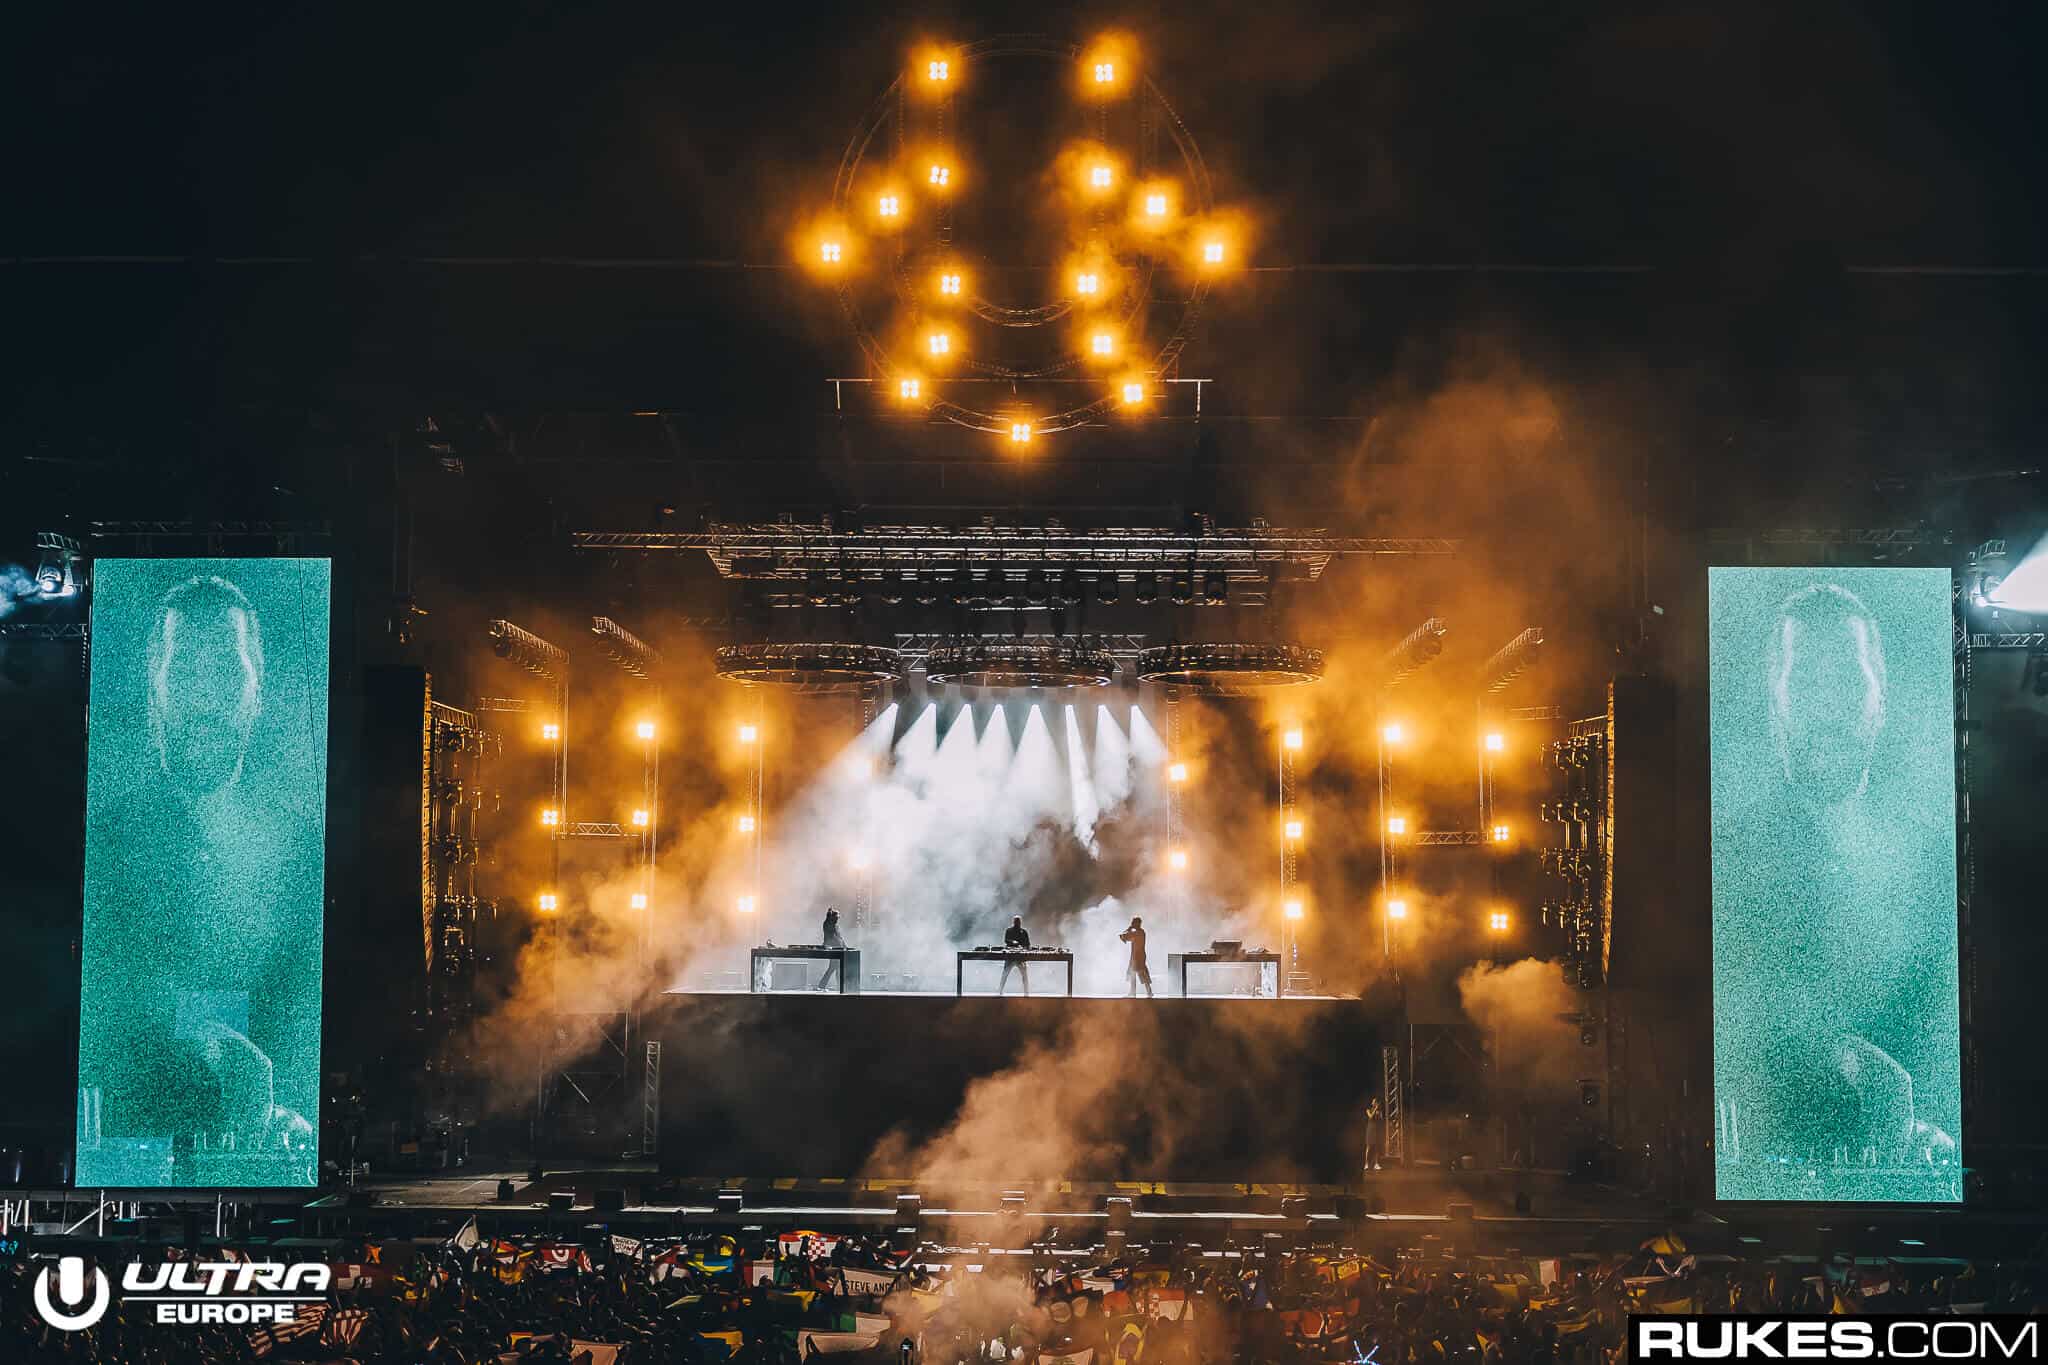 Swedish House Mafia tease ‘Paradise Again’ World Tour setlist